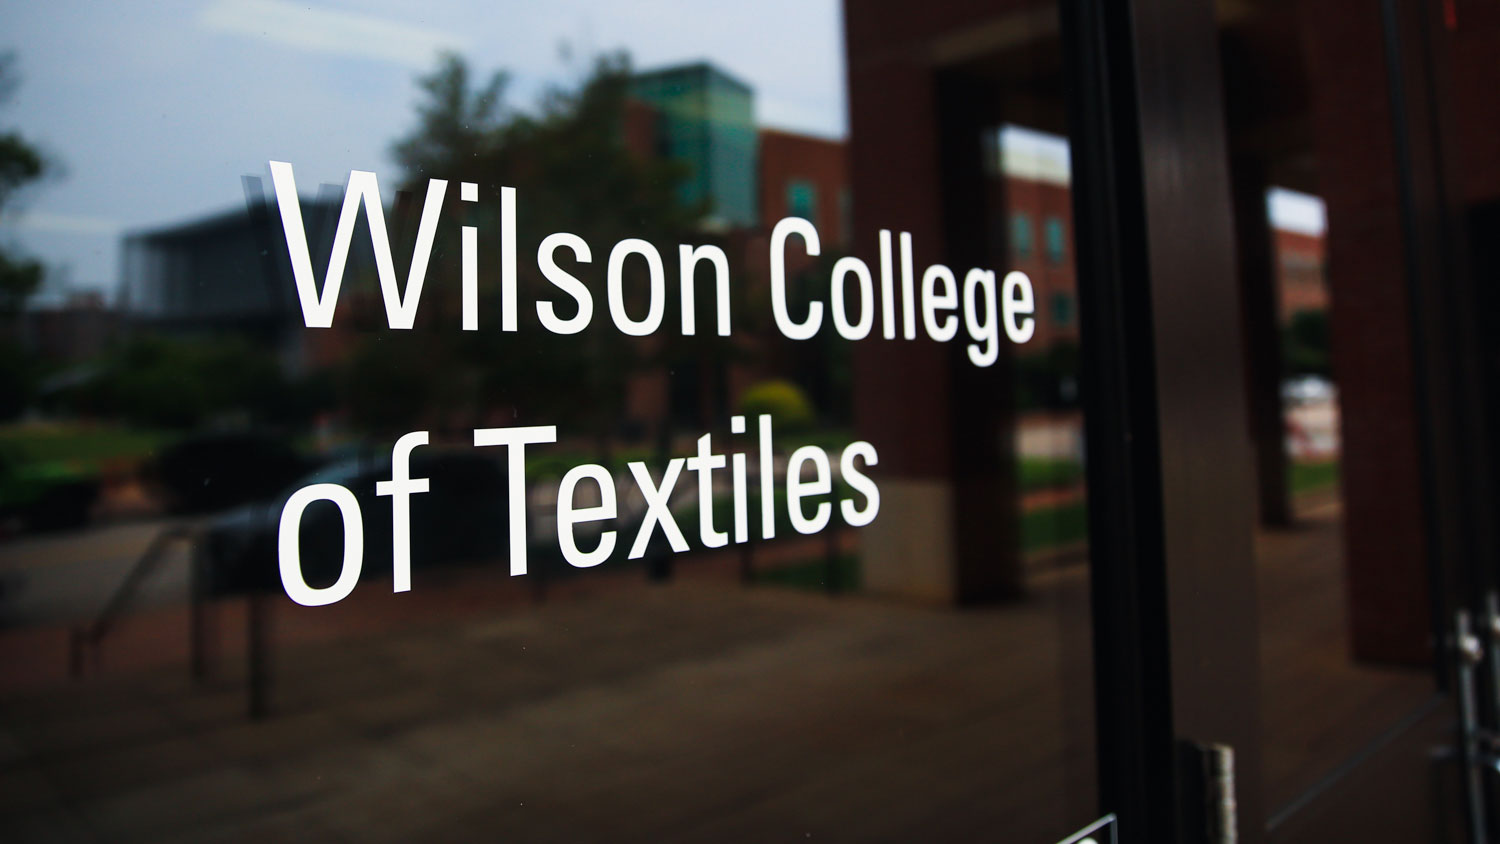 Wilson College of Textiles sign on door